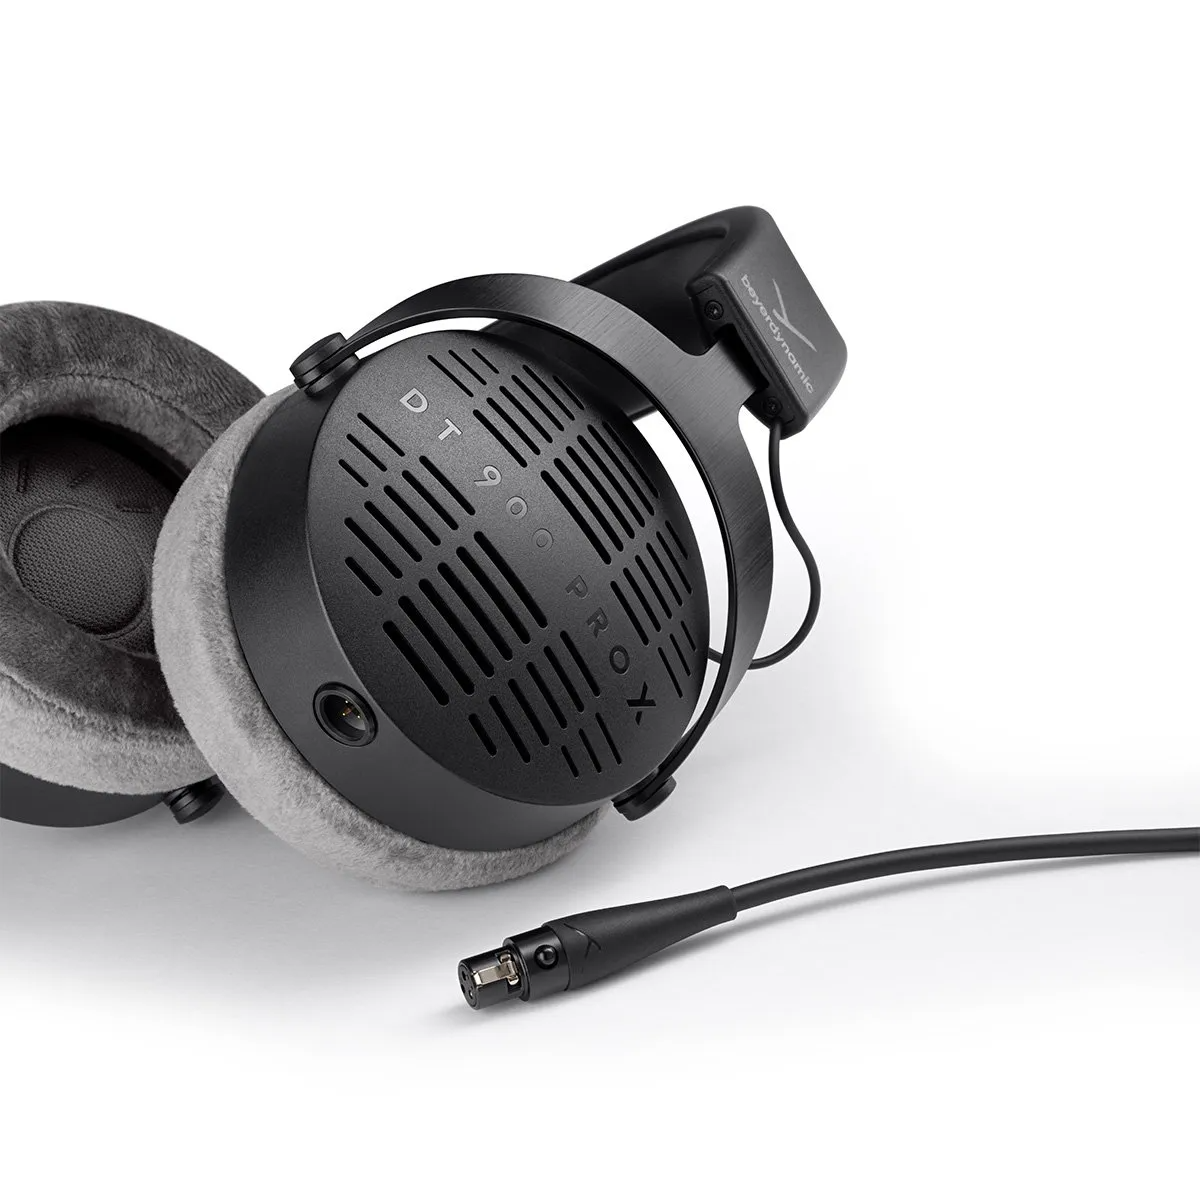 Beyerdynamic DT 770 Pro X Limited Edition headphones mark a